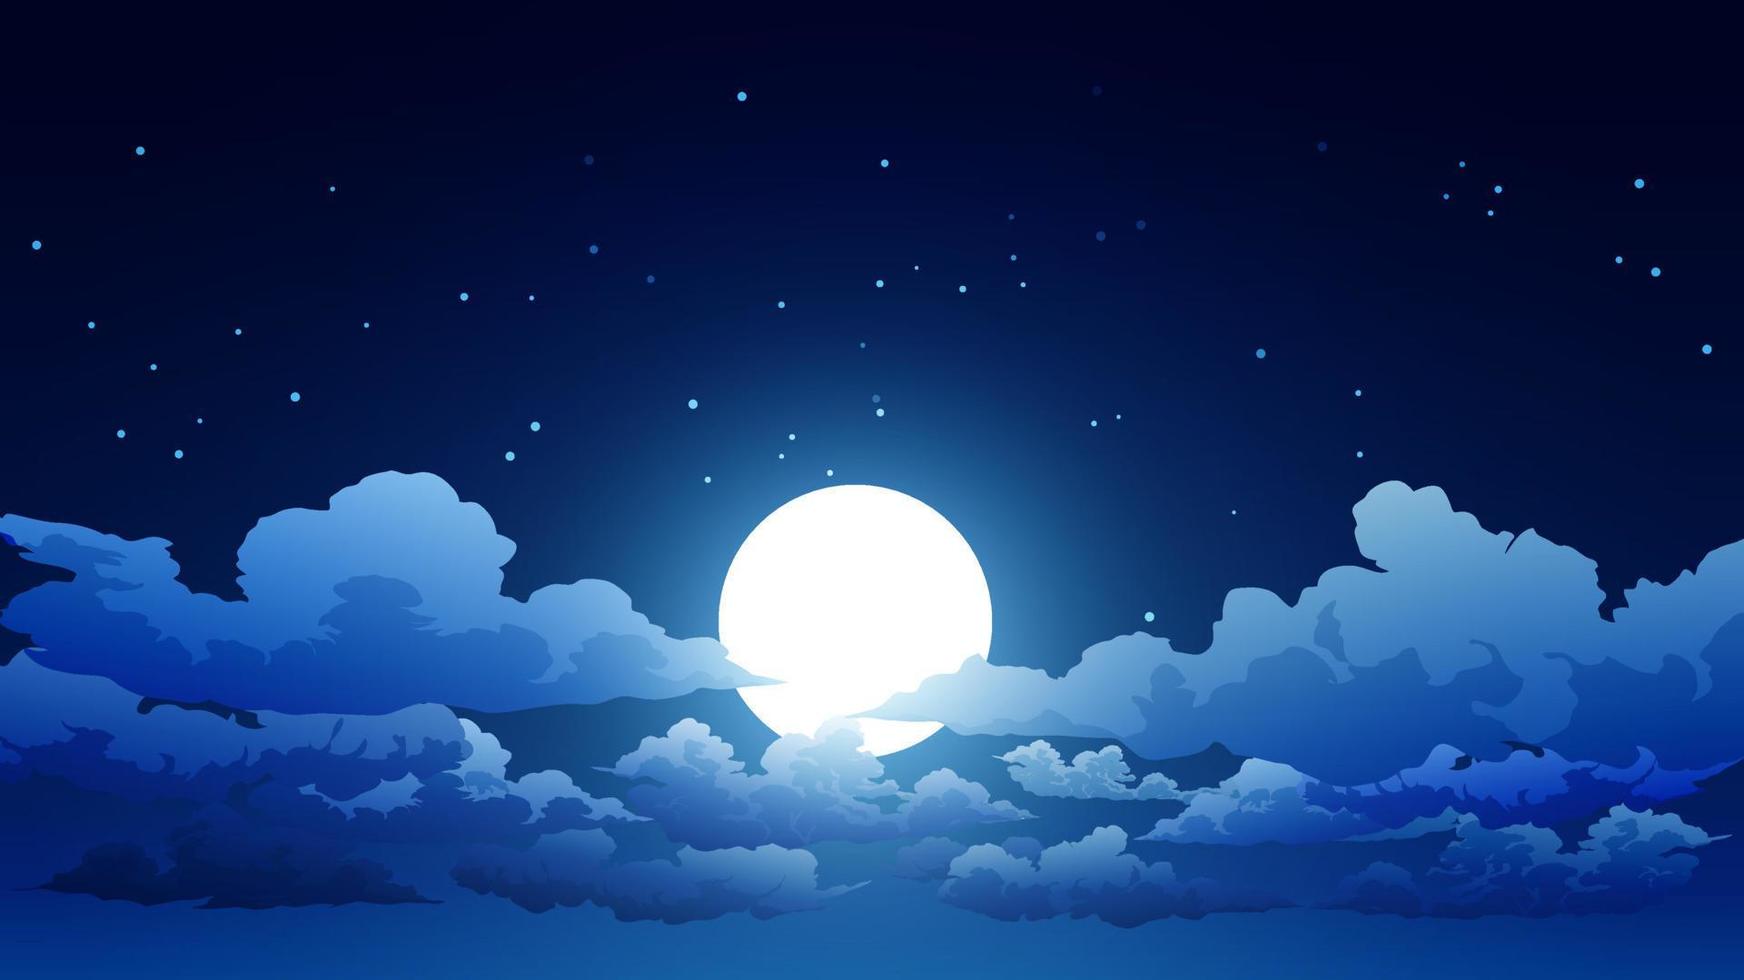 sfondo del cielo notturno con nuvole, luna piena e stelle vettore